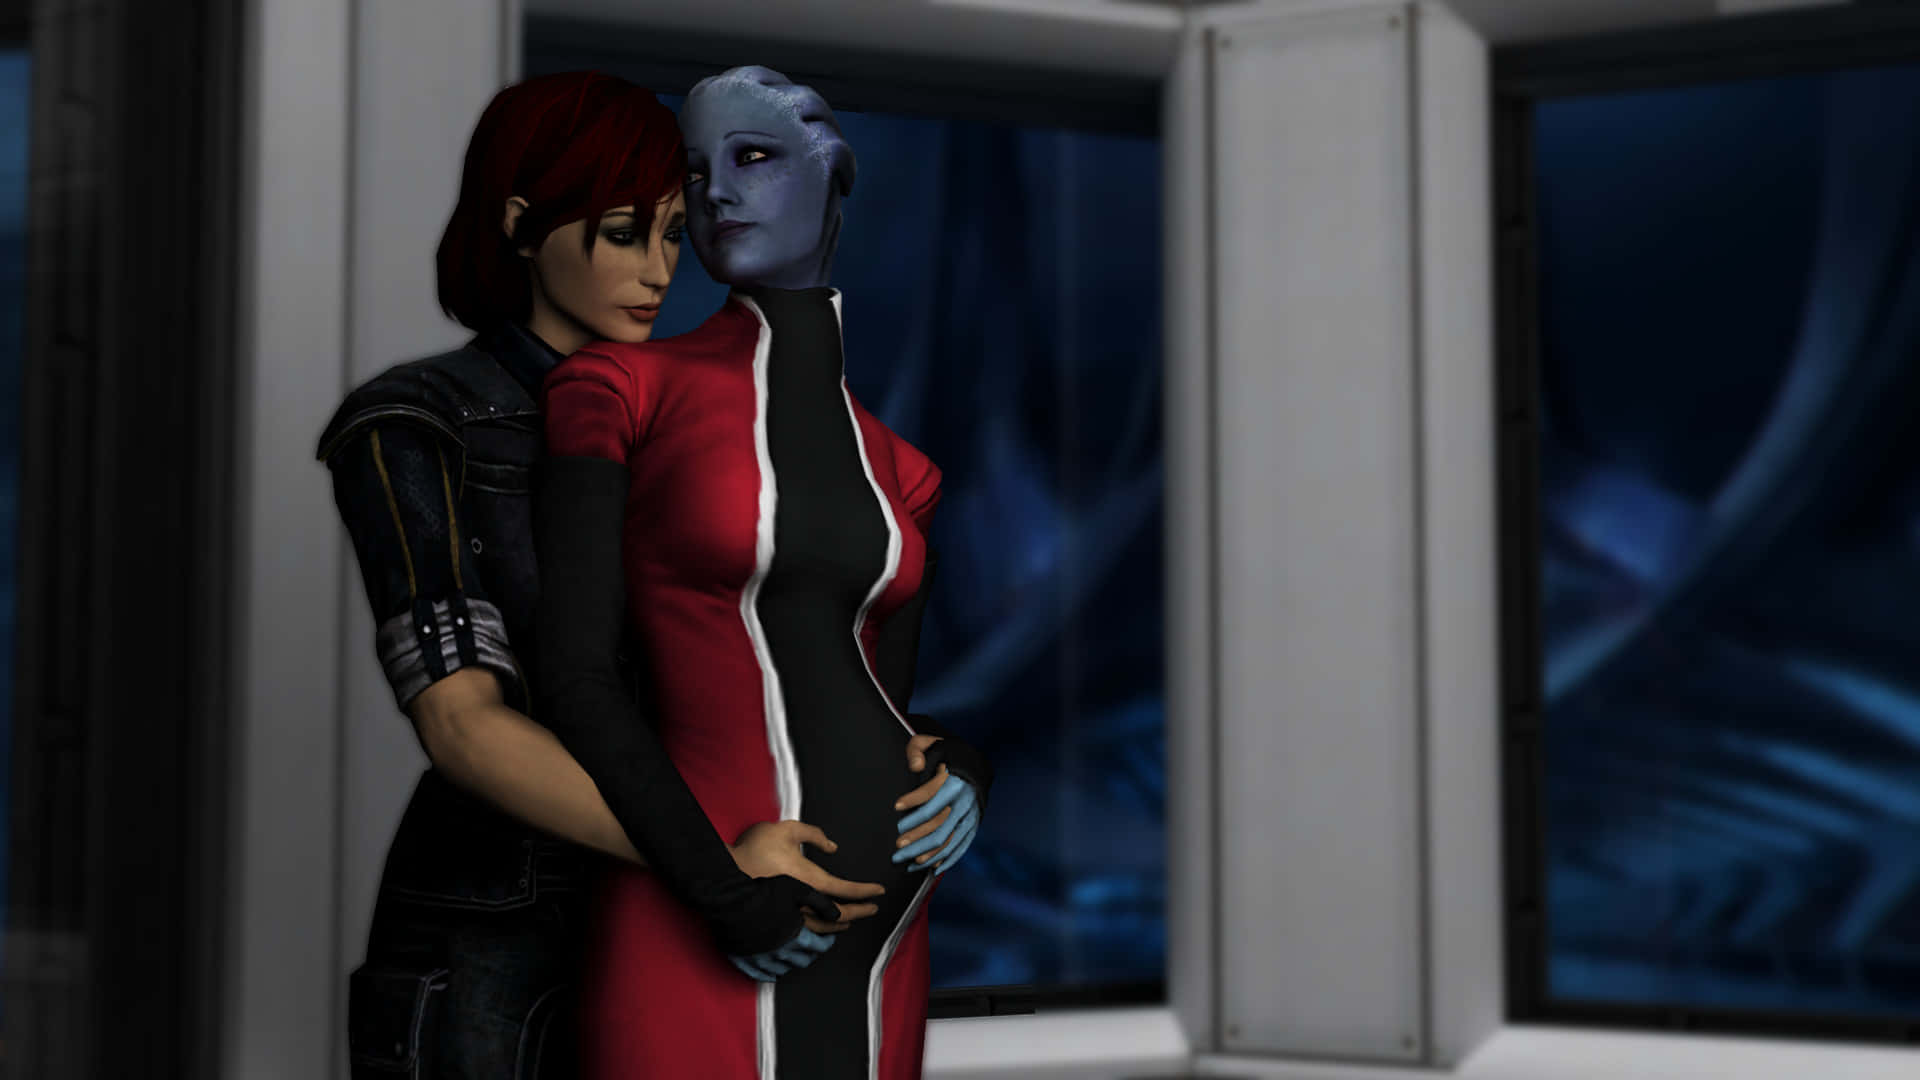 Commander Shepard - Female Lead in Mass Effect Wallpaper